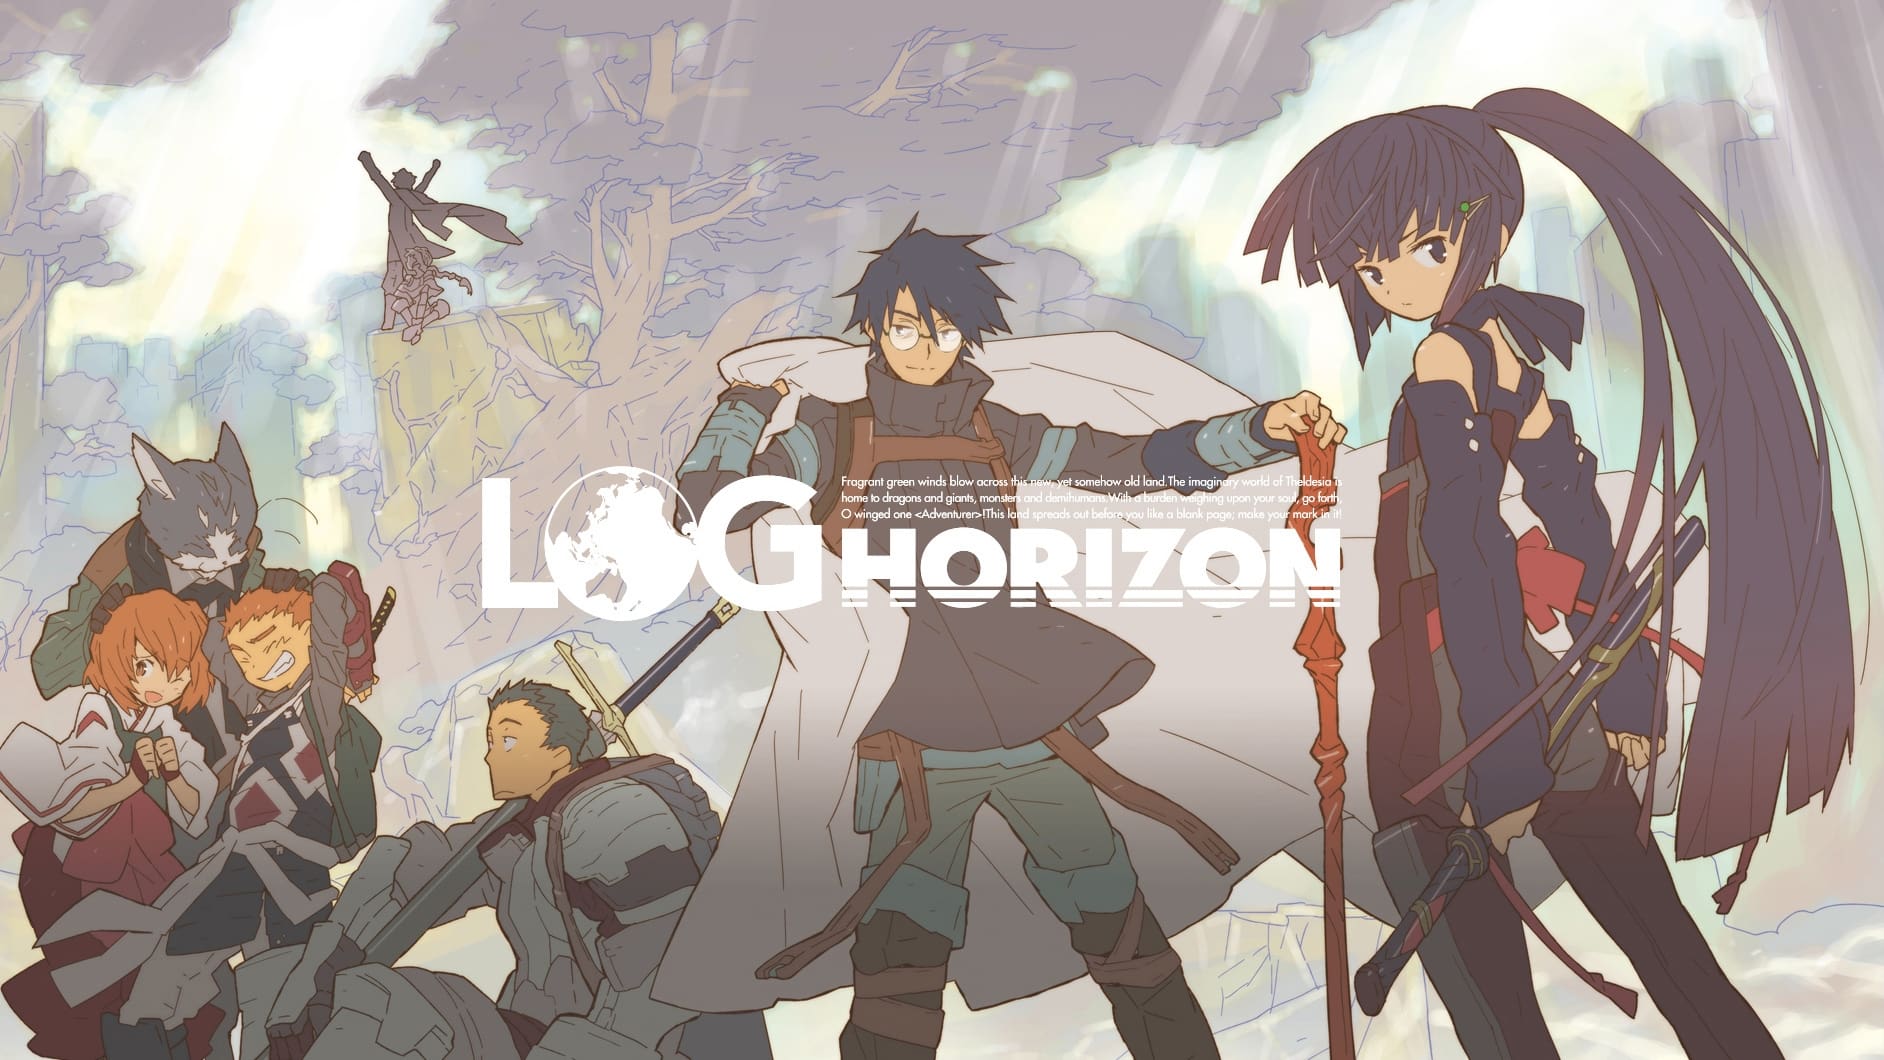 Log Horizon: Entaku Houkai